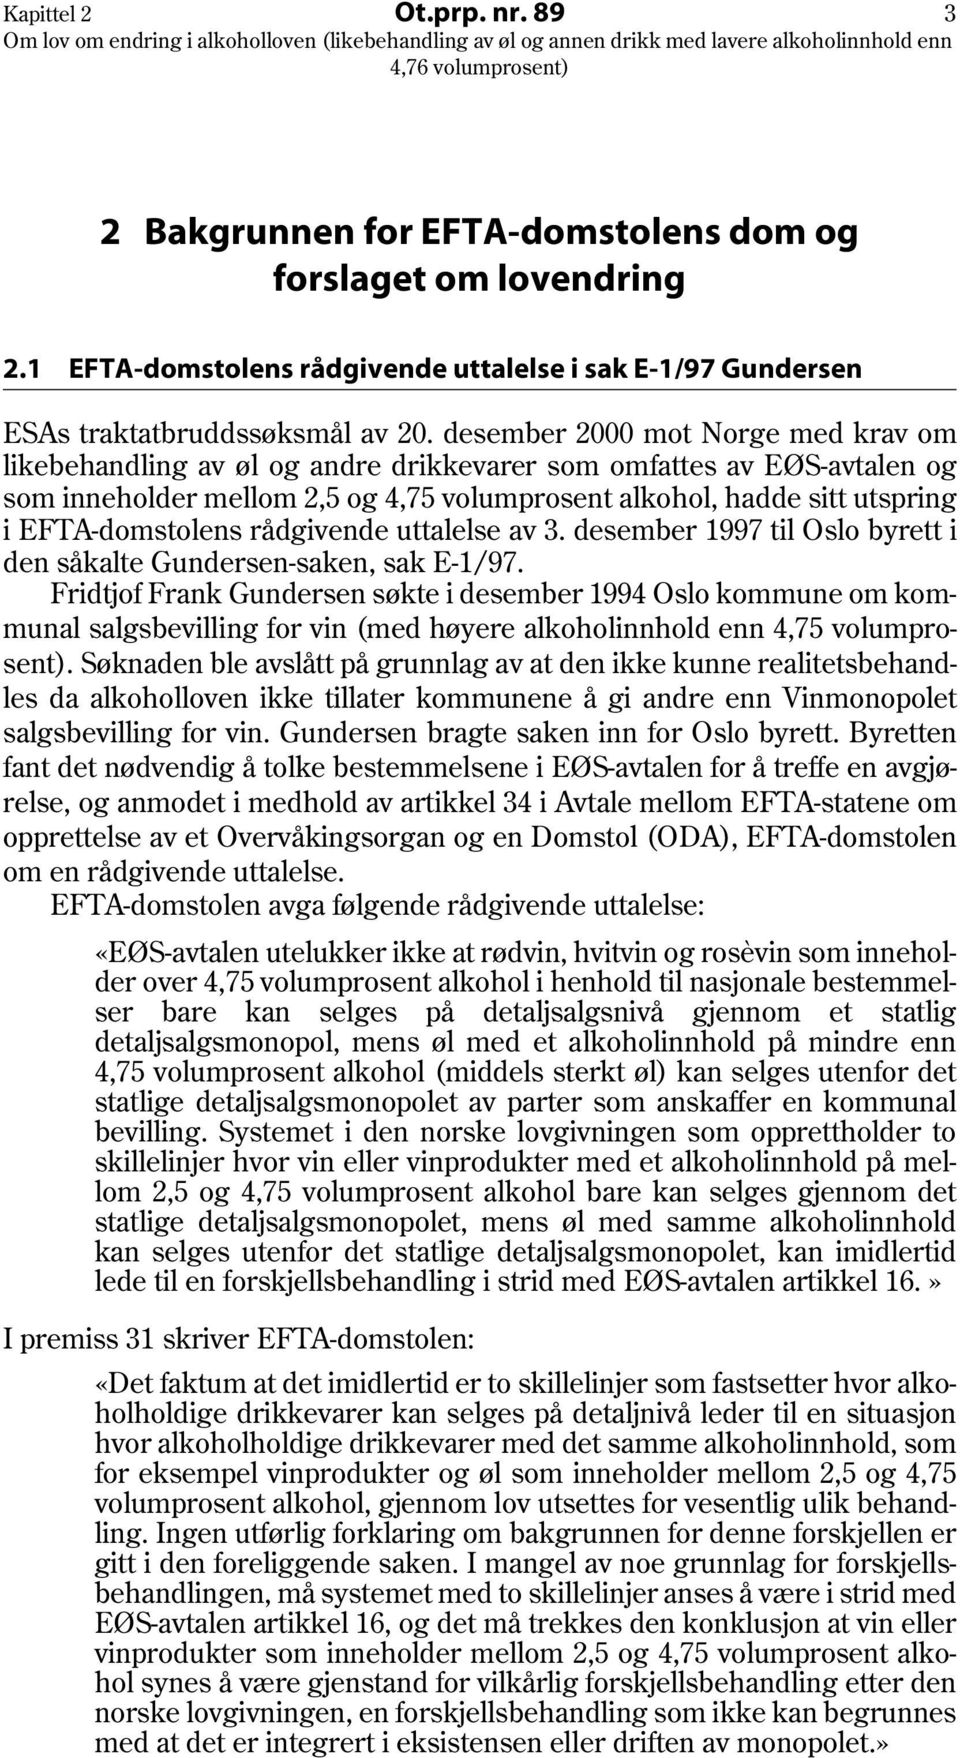 EFTA-domstolens rådgivende uttalelse av 3. desember 1997 til Oslo byrett i den såkalte Gundersen-saken, sak E-1/97.